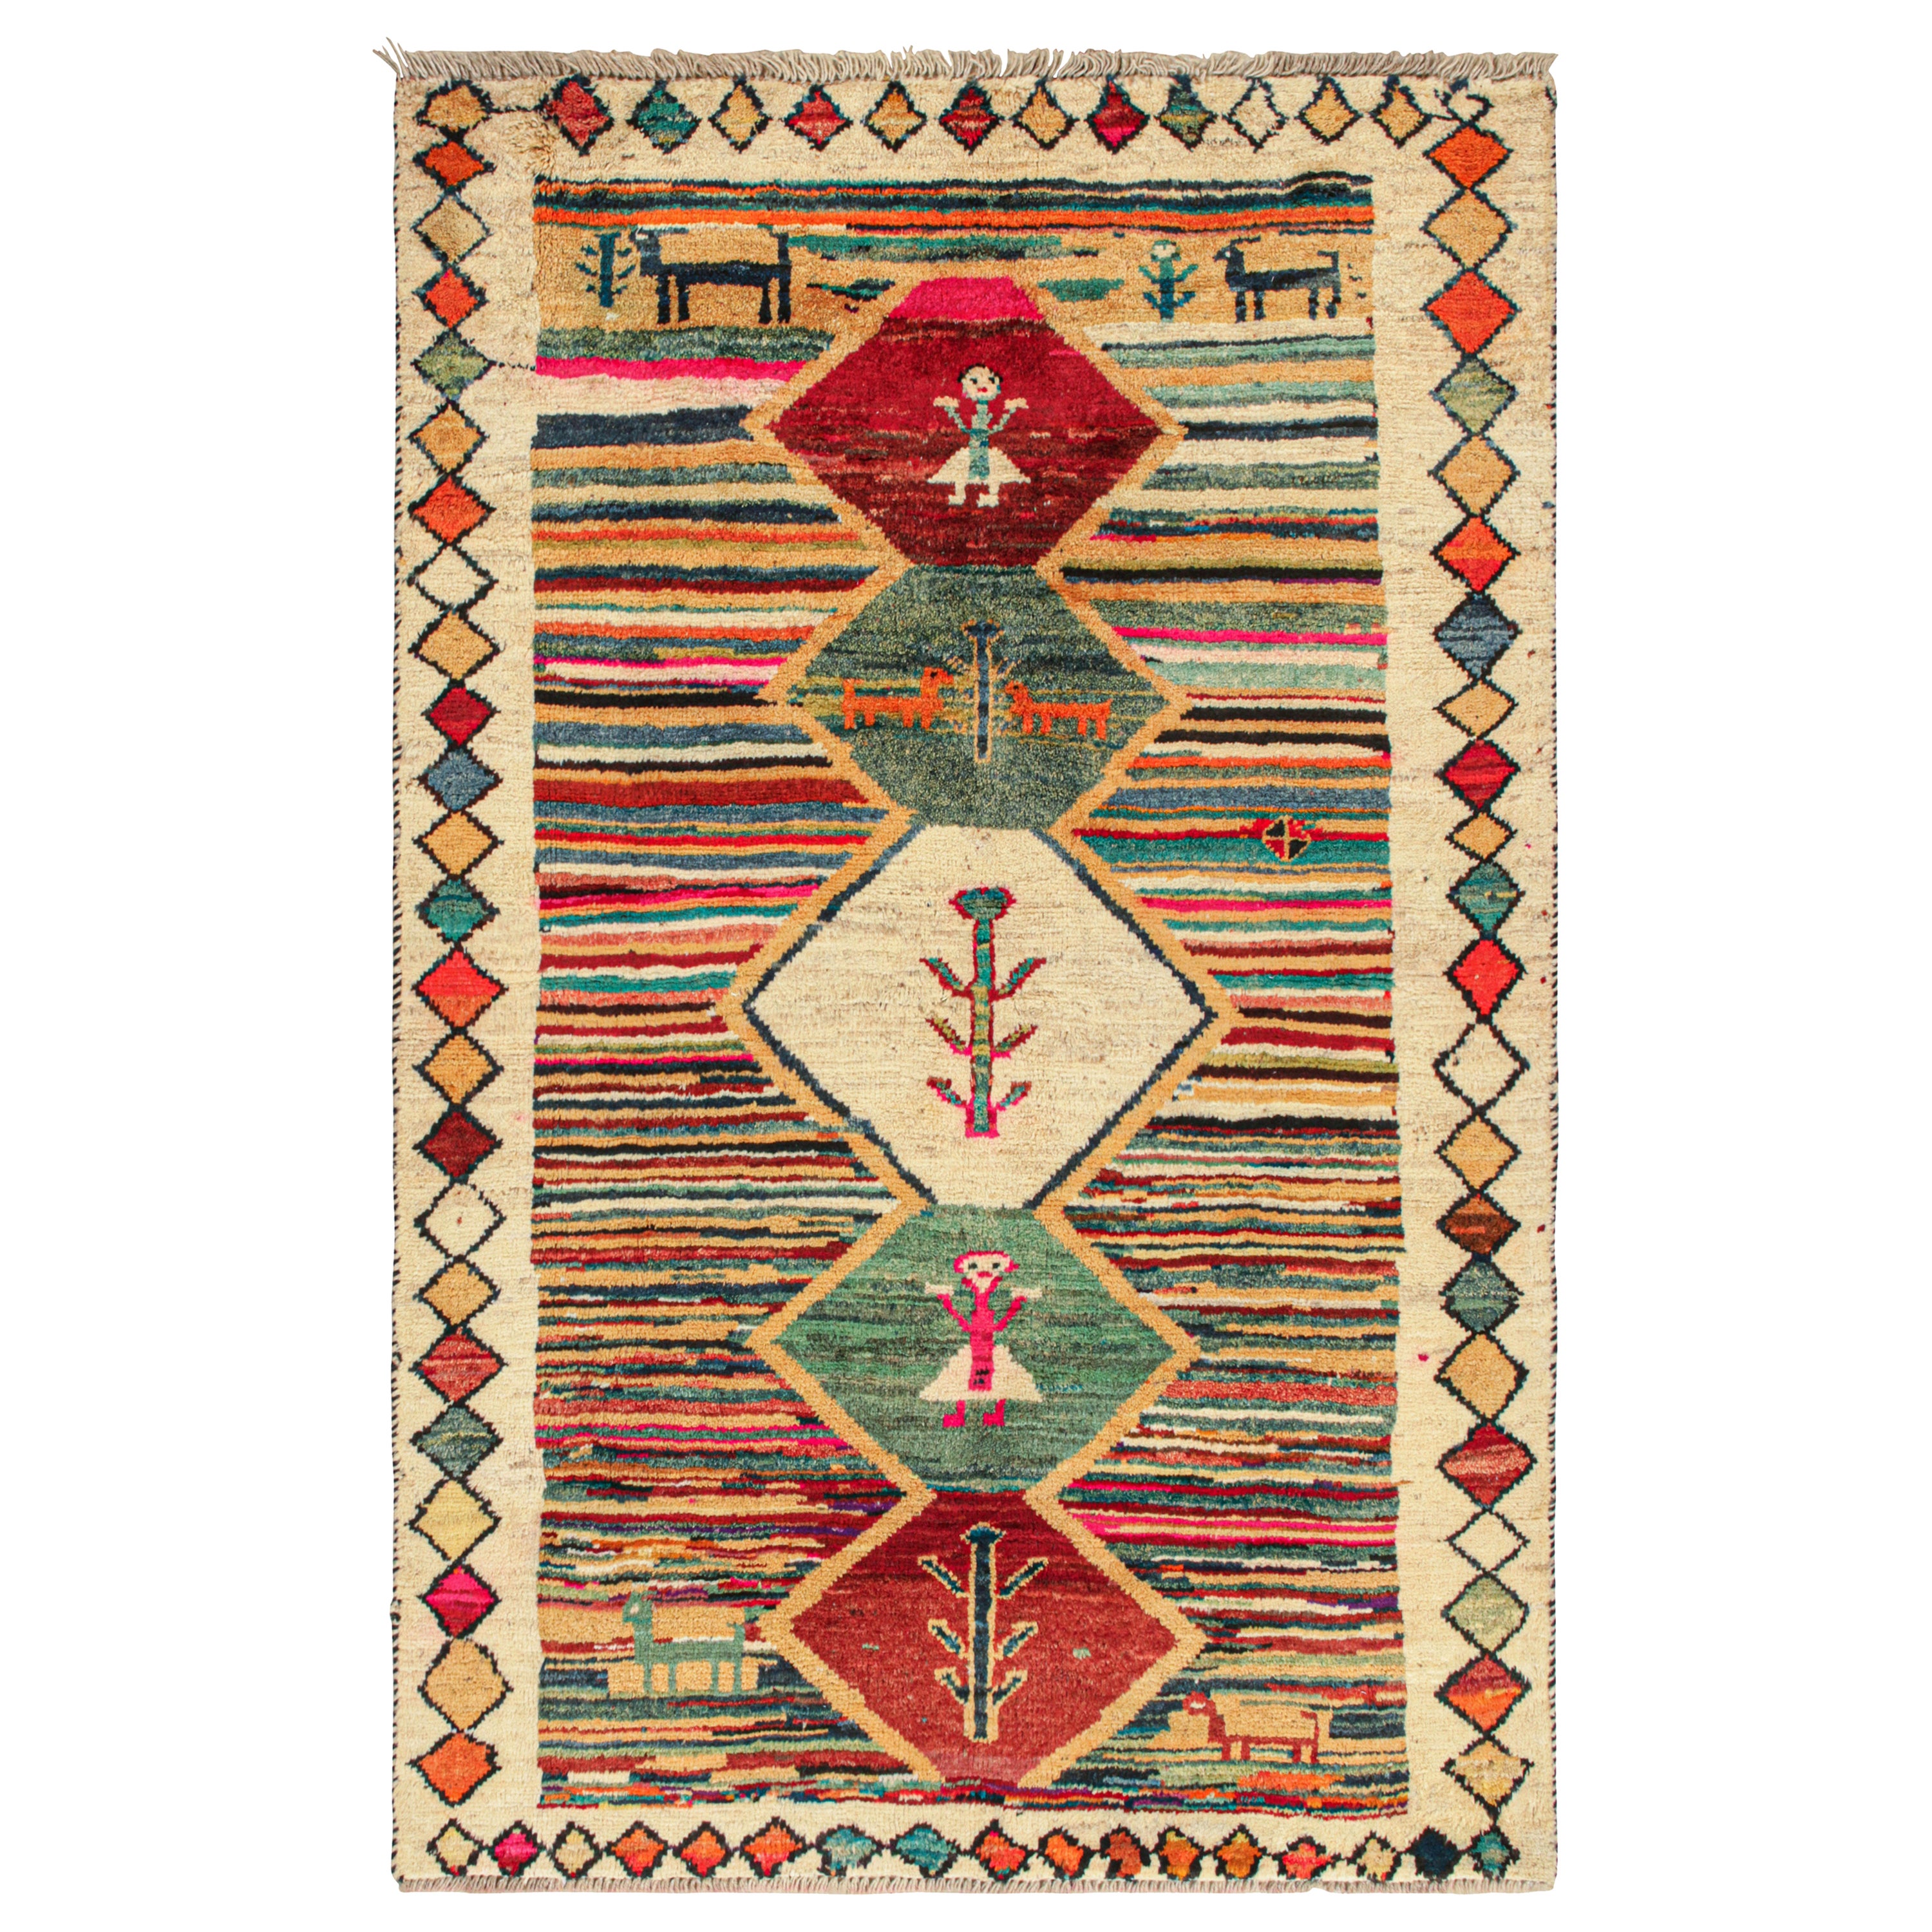 Persischer Stammeskunst-Teppich in lebhaften Farben mit malerischem Muster von Rug & Kilim